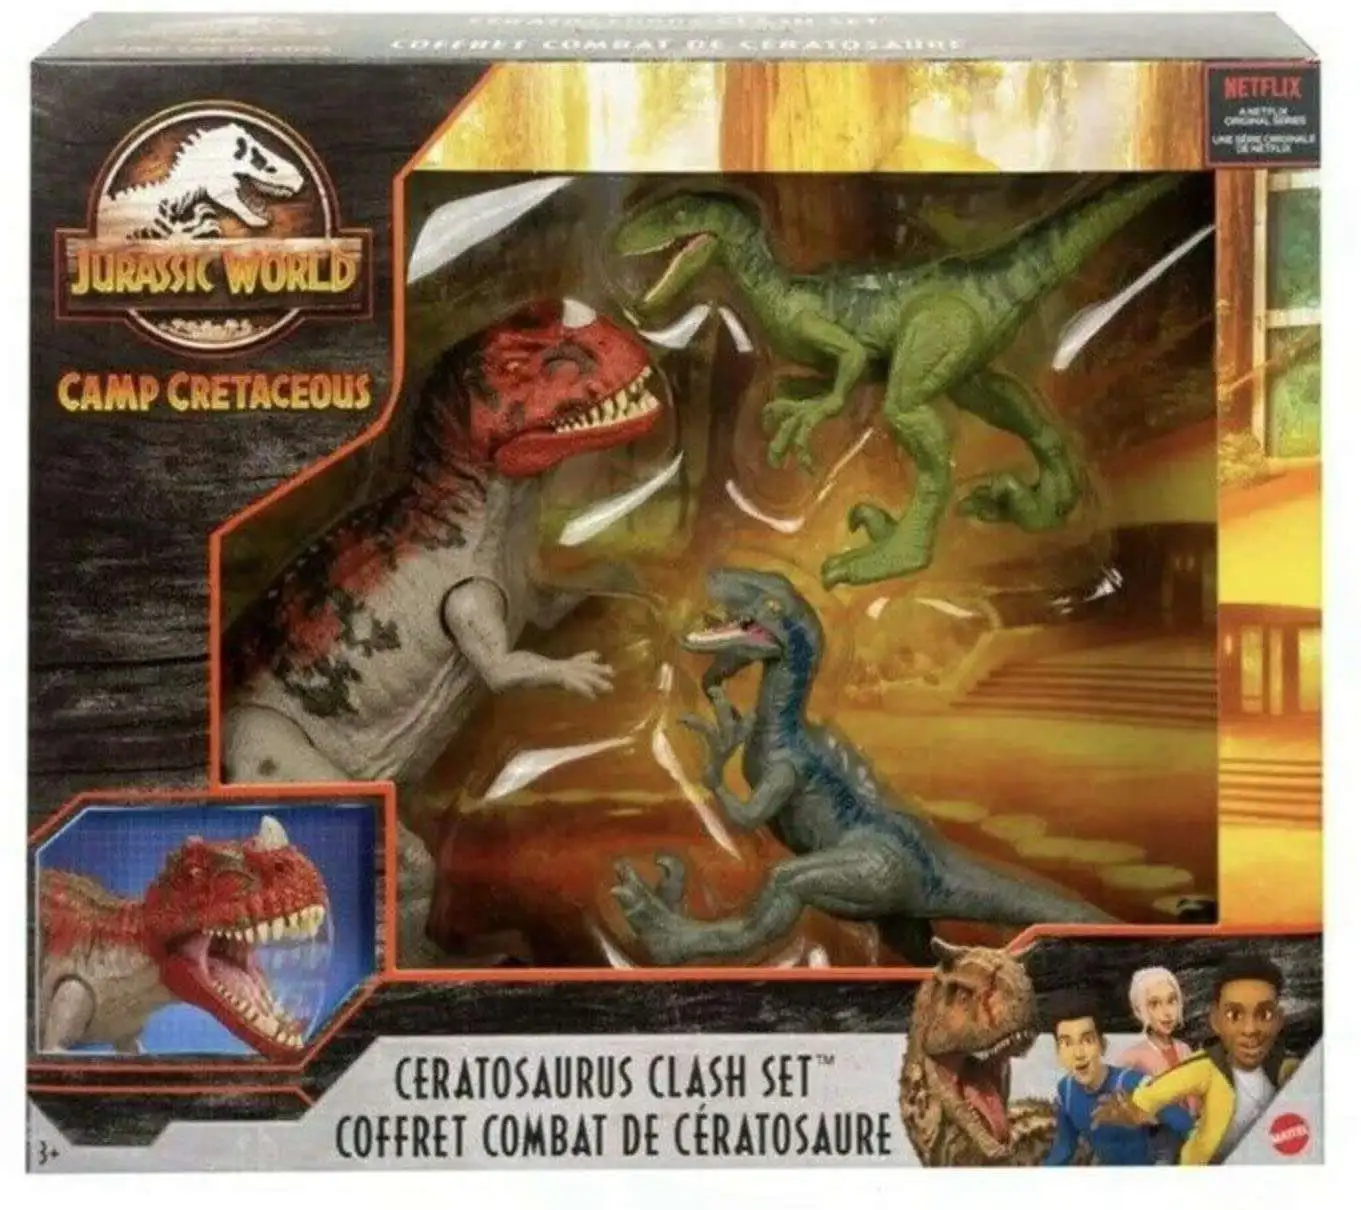 Jurassic World Camp Cretaceous Ceratosaurus Clash Set Action Figure 3-Pack [Ceratosaurus & 2x Velociraptors]